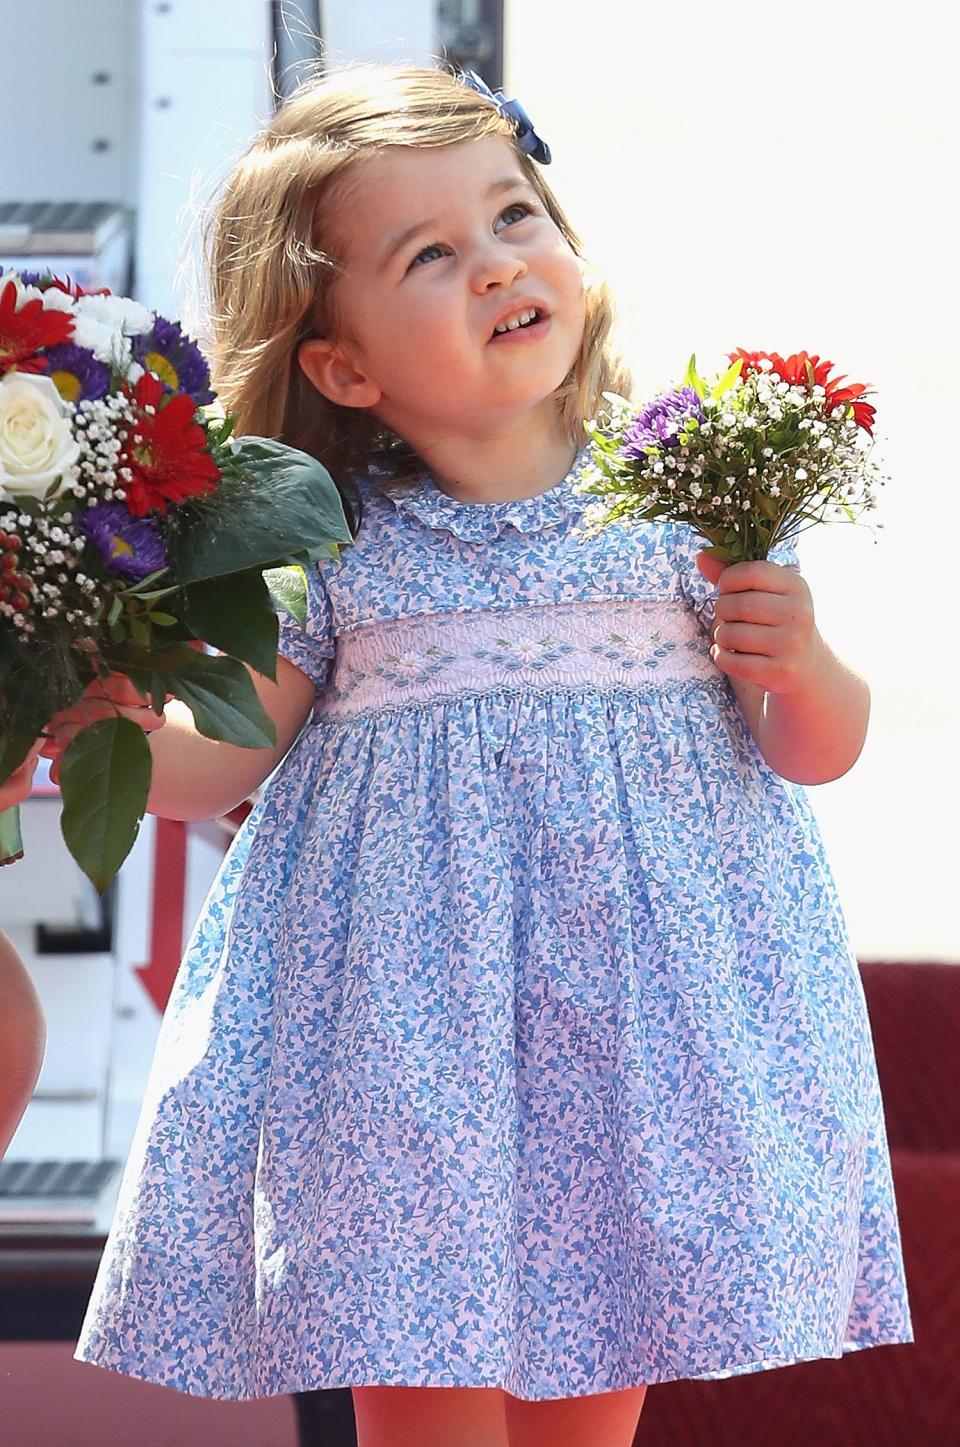 Prinzessin Charlotte wird ihren Platz in der Thronfolge nicht verlieren. (Bild: Chris Jackson/Getty Images)